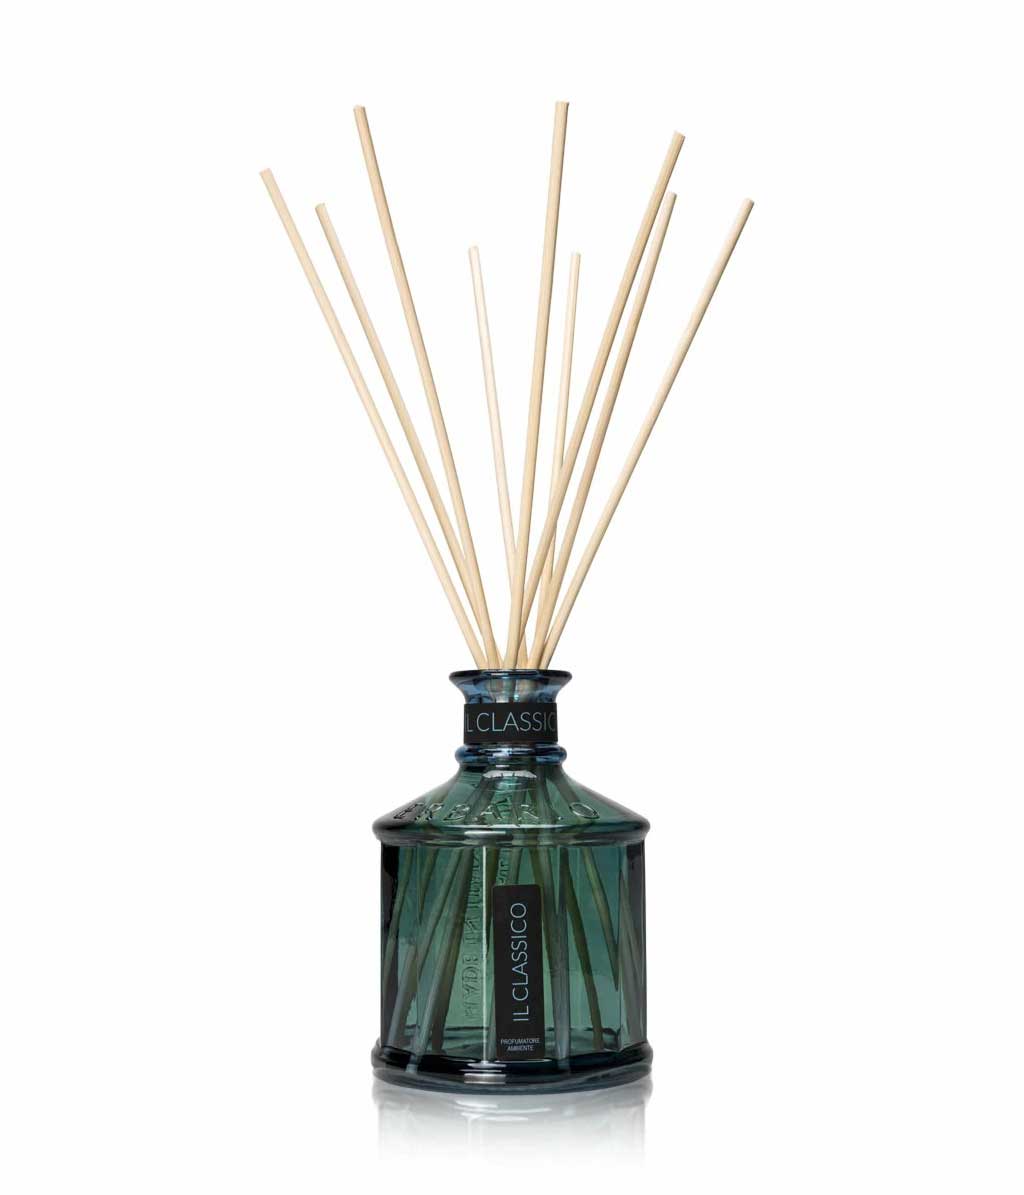 Erbario Luxury Home Fragrance Diffuser - 250ml - Il Classico